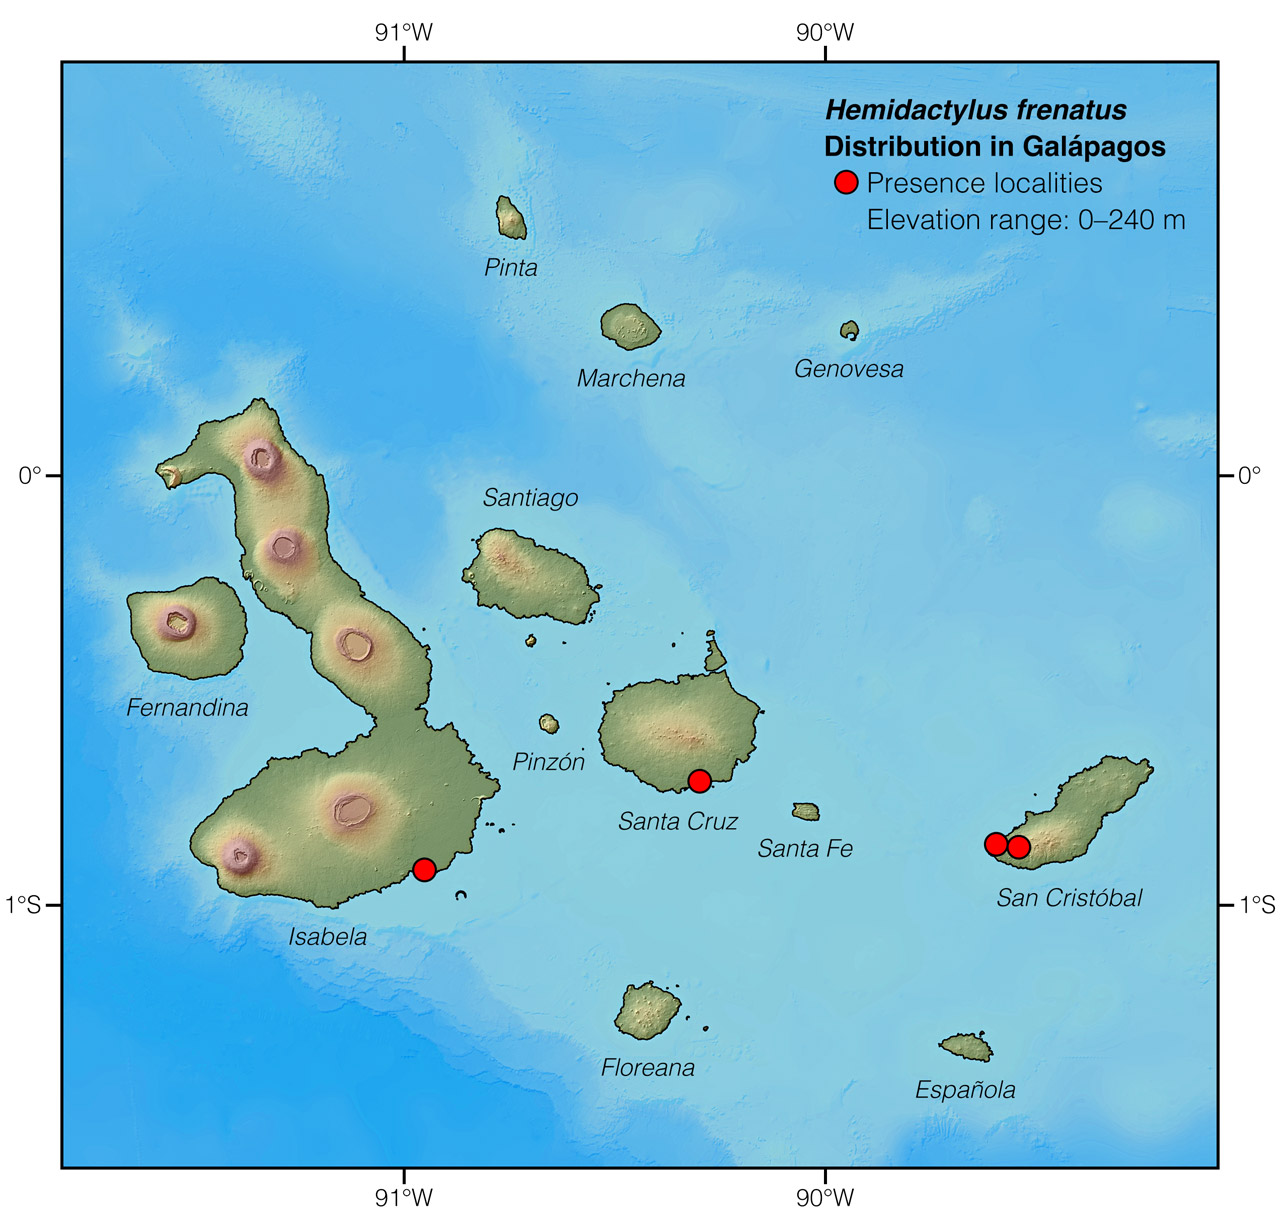 Distribution of Hemidactylus frenatus in Galápagos